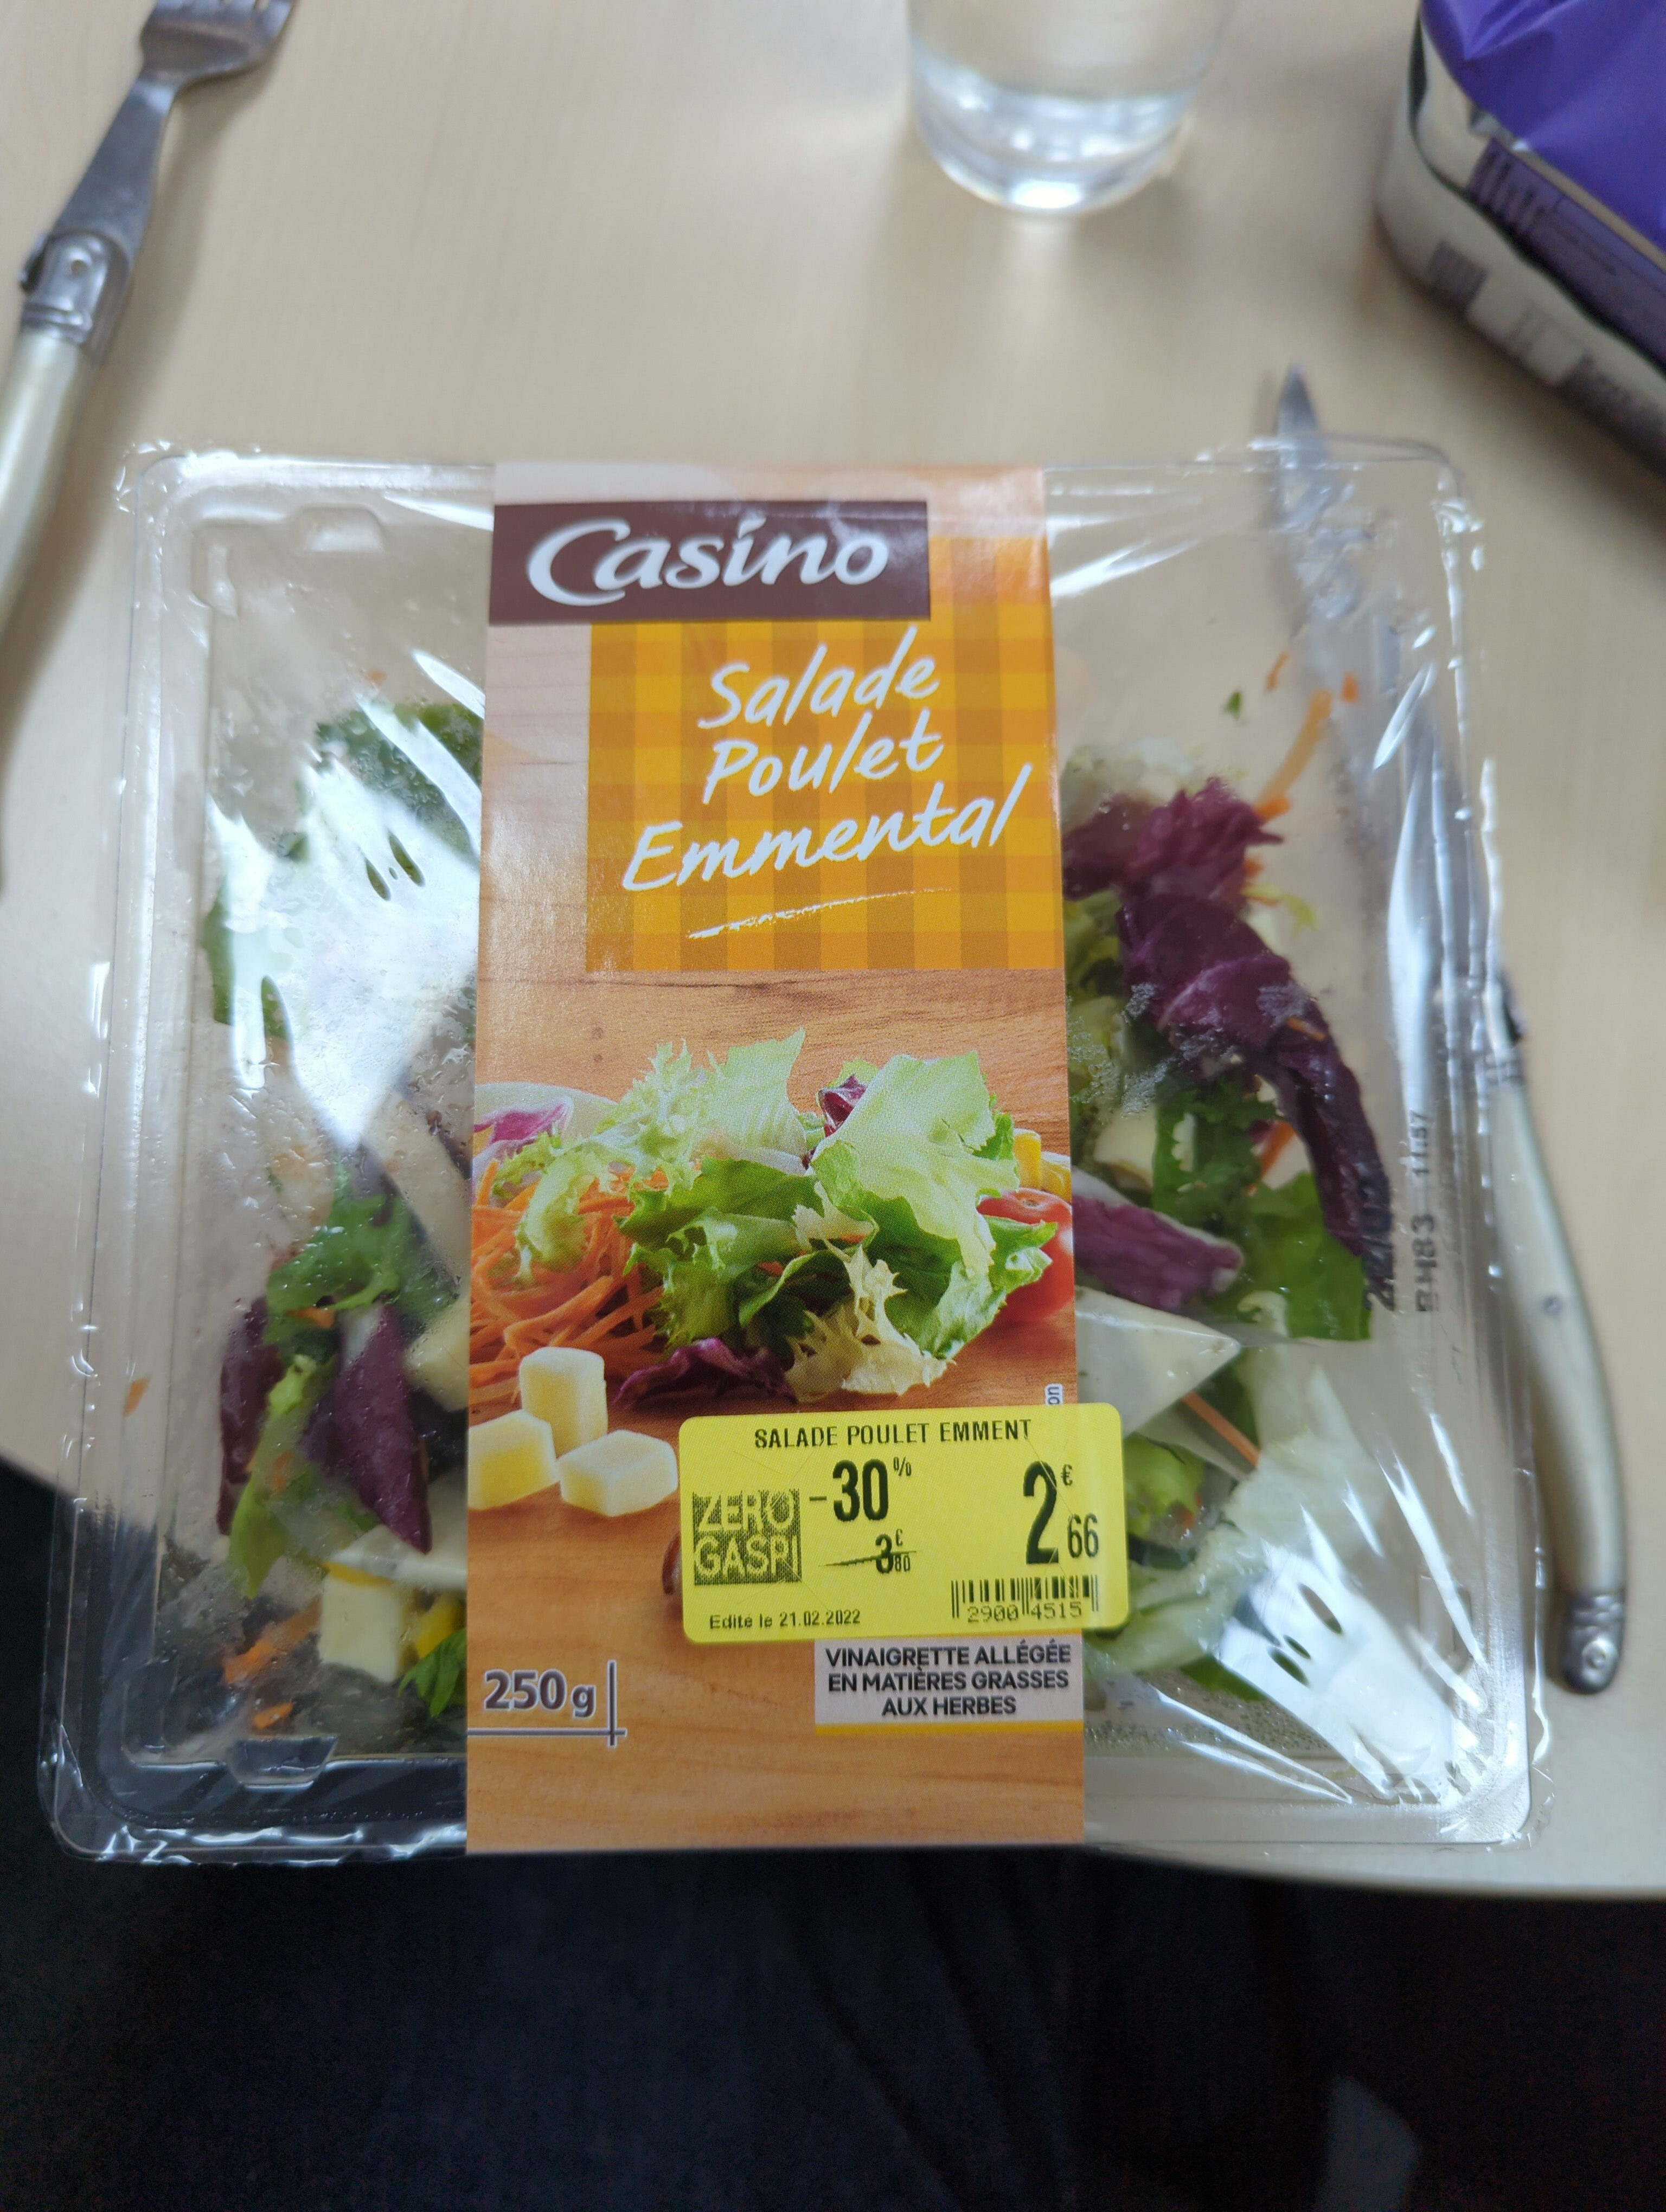 Salade poulet emmental - Product - fr